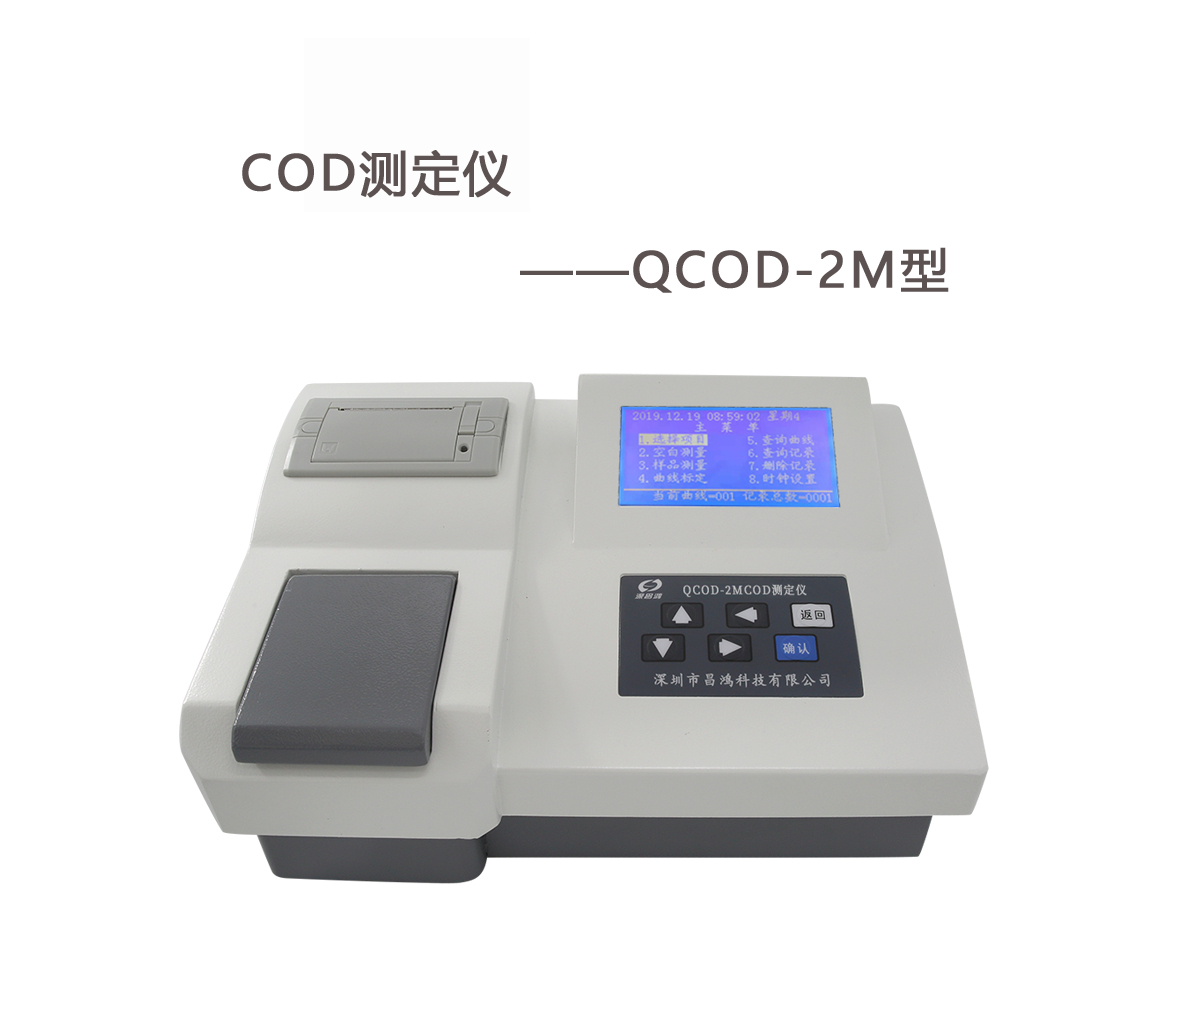 COD测定仪标有哪些准溶液用途与配制方法?